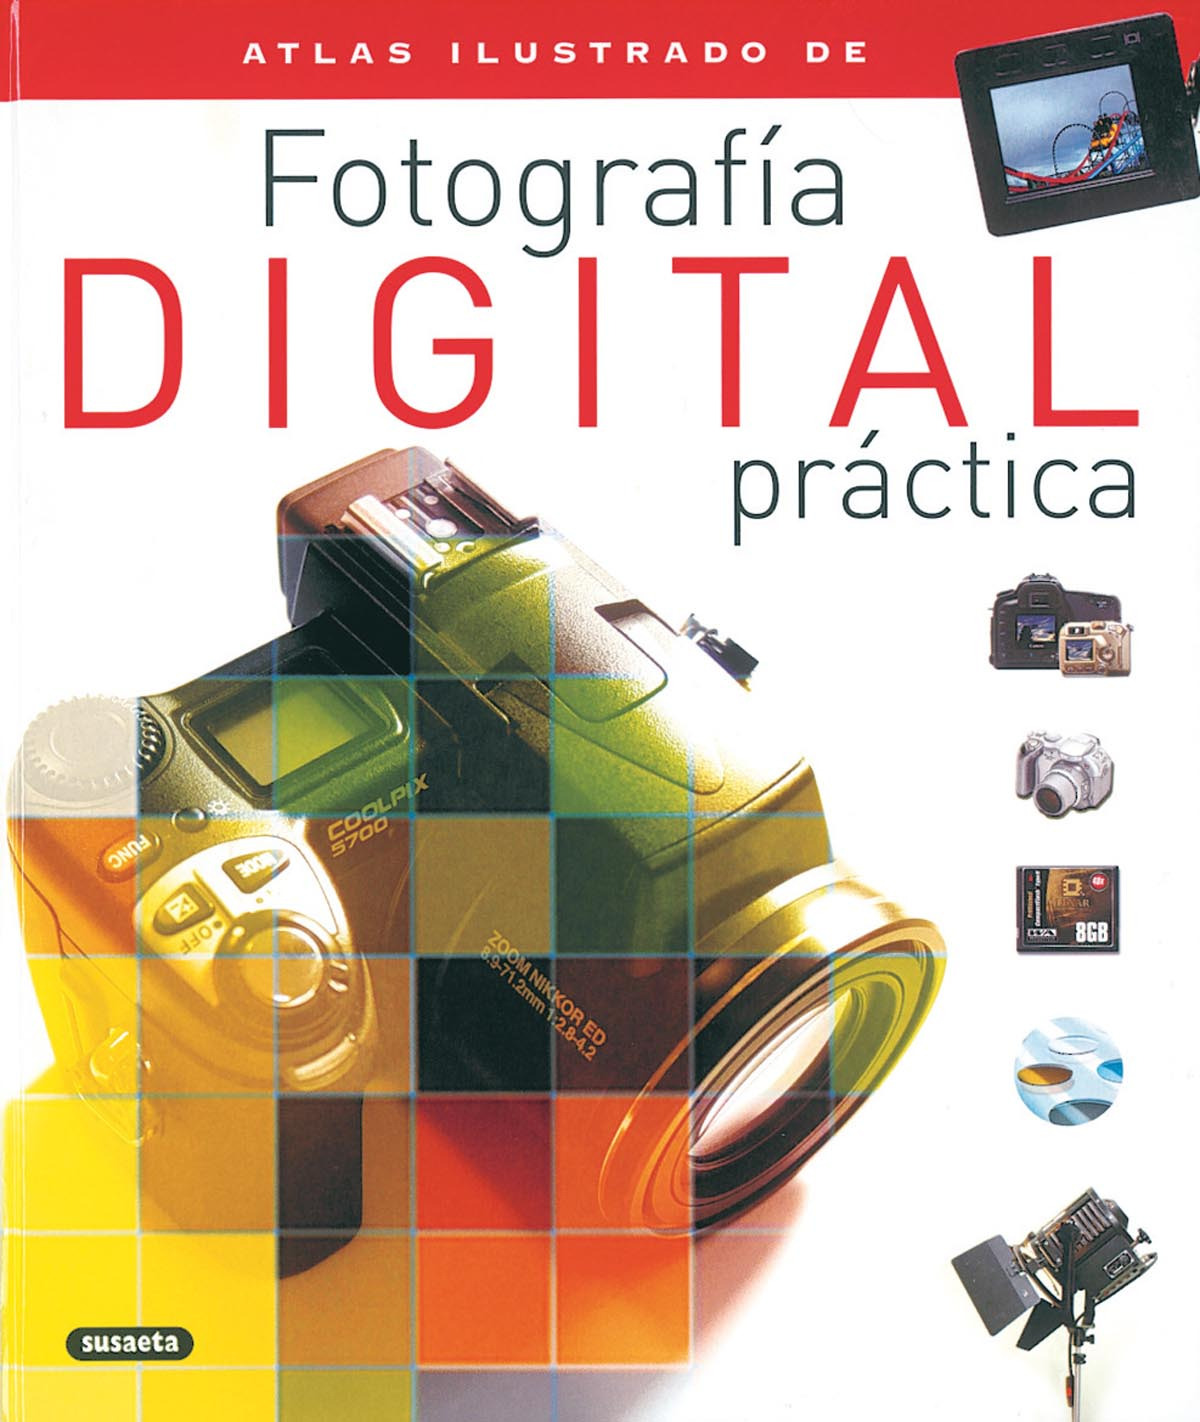 Atlas ilustrado de fotografía digital práctica - Varios autores